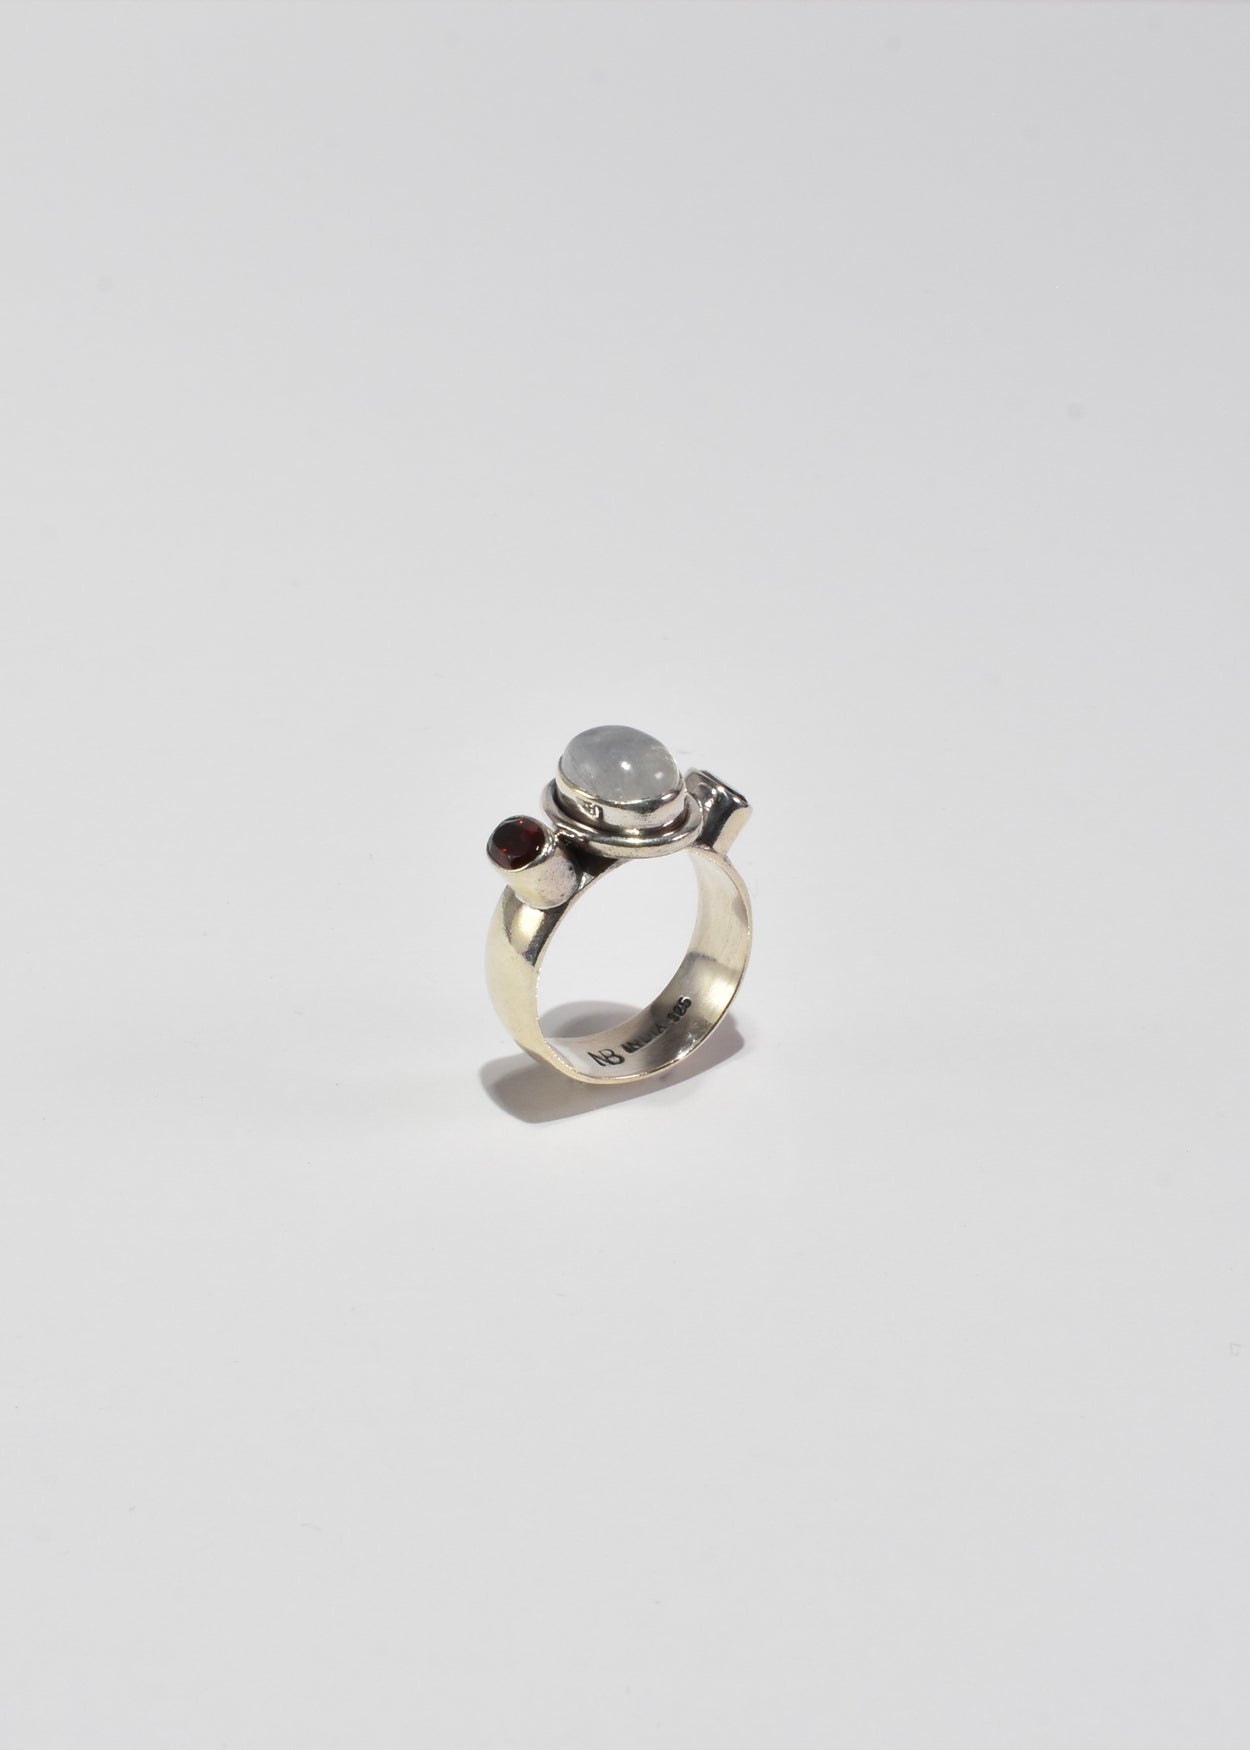 Moonstone Garnet Ring